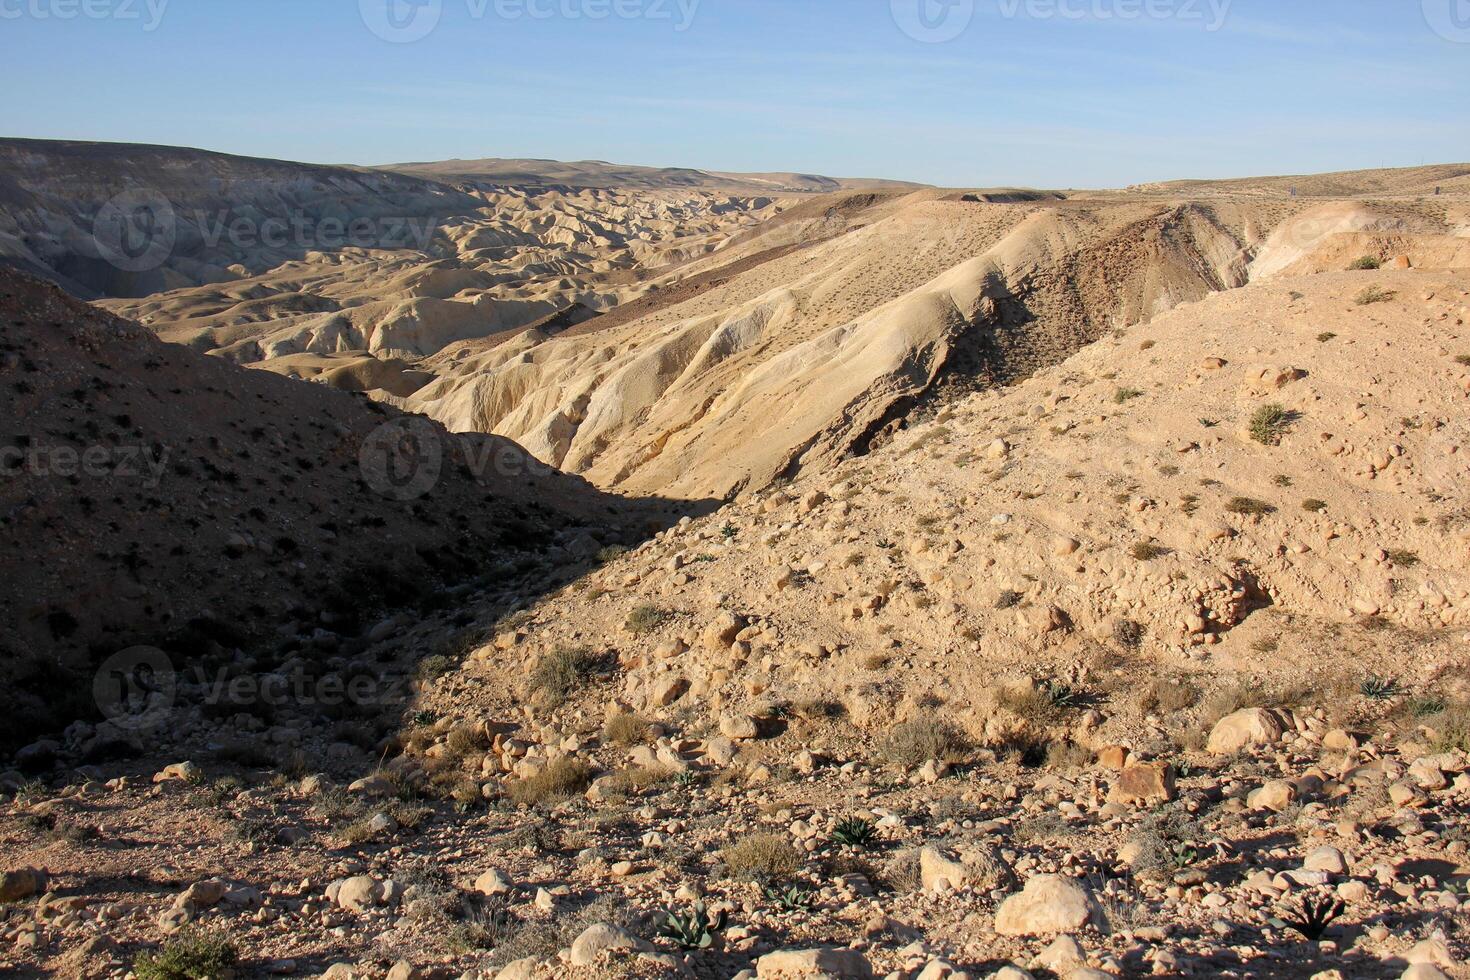 el negev es un Desierto en el medio este, situado en Israel y ocupando acerca de 60 60 de sus territorio. foto